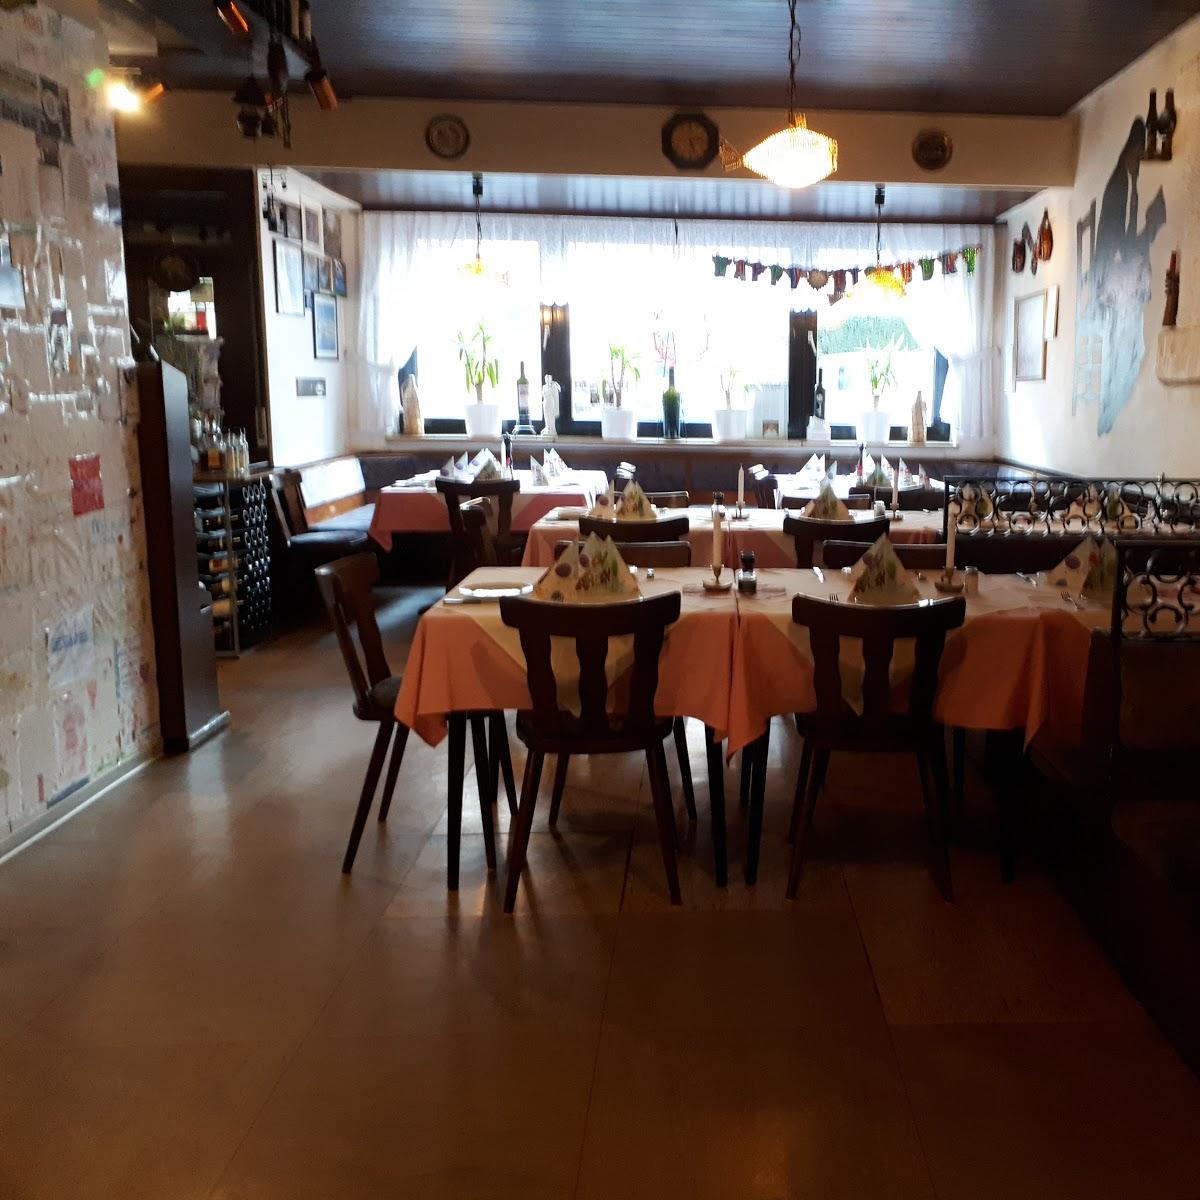 Restaurant "Taverne Niko" in  Wiesbaden